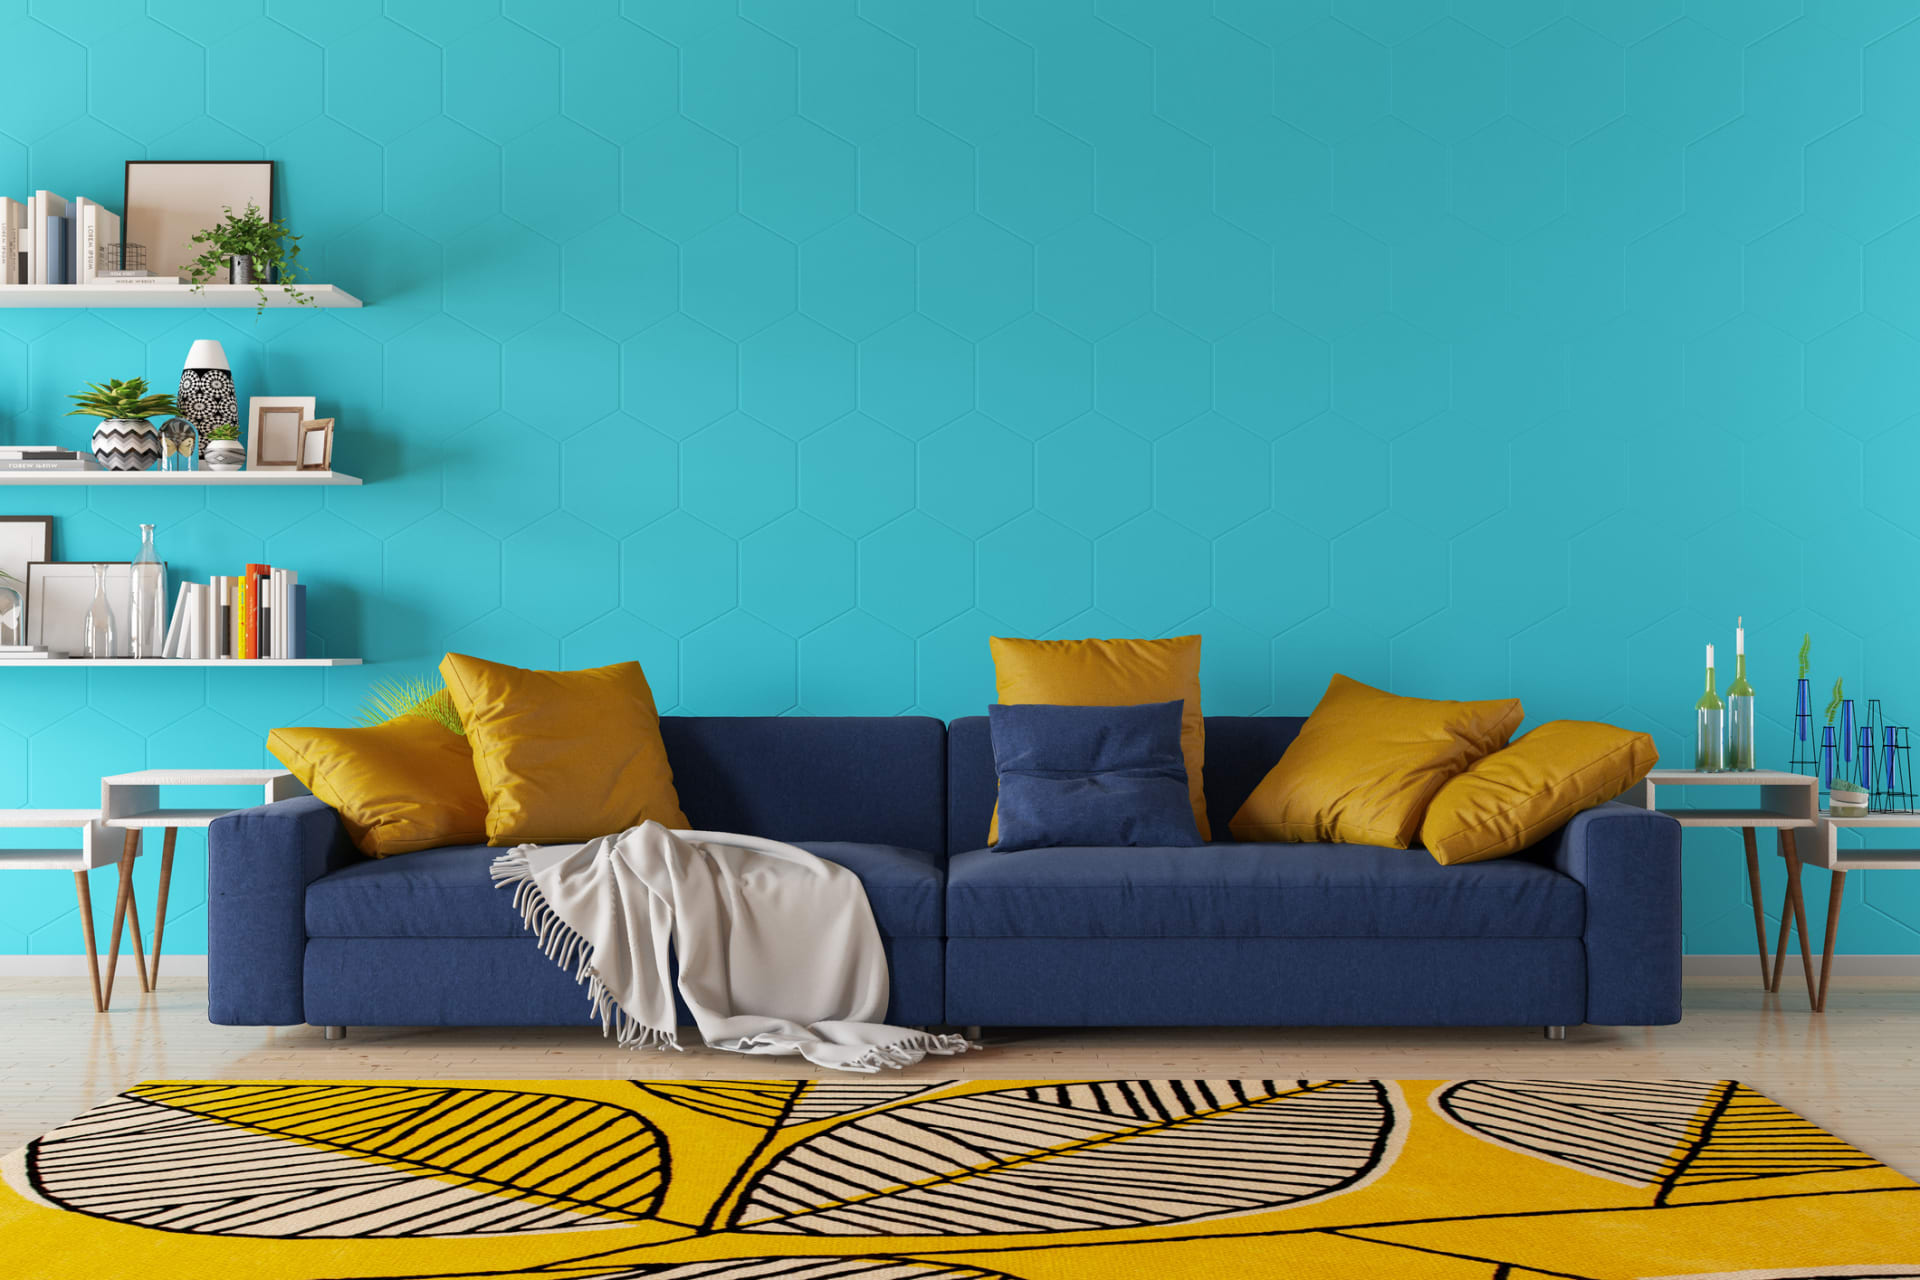 Na stěně chladný tyrkys, na pohovce temně modrý odstín a doplňky ve slunečné žluté. Ideální kombinace